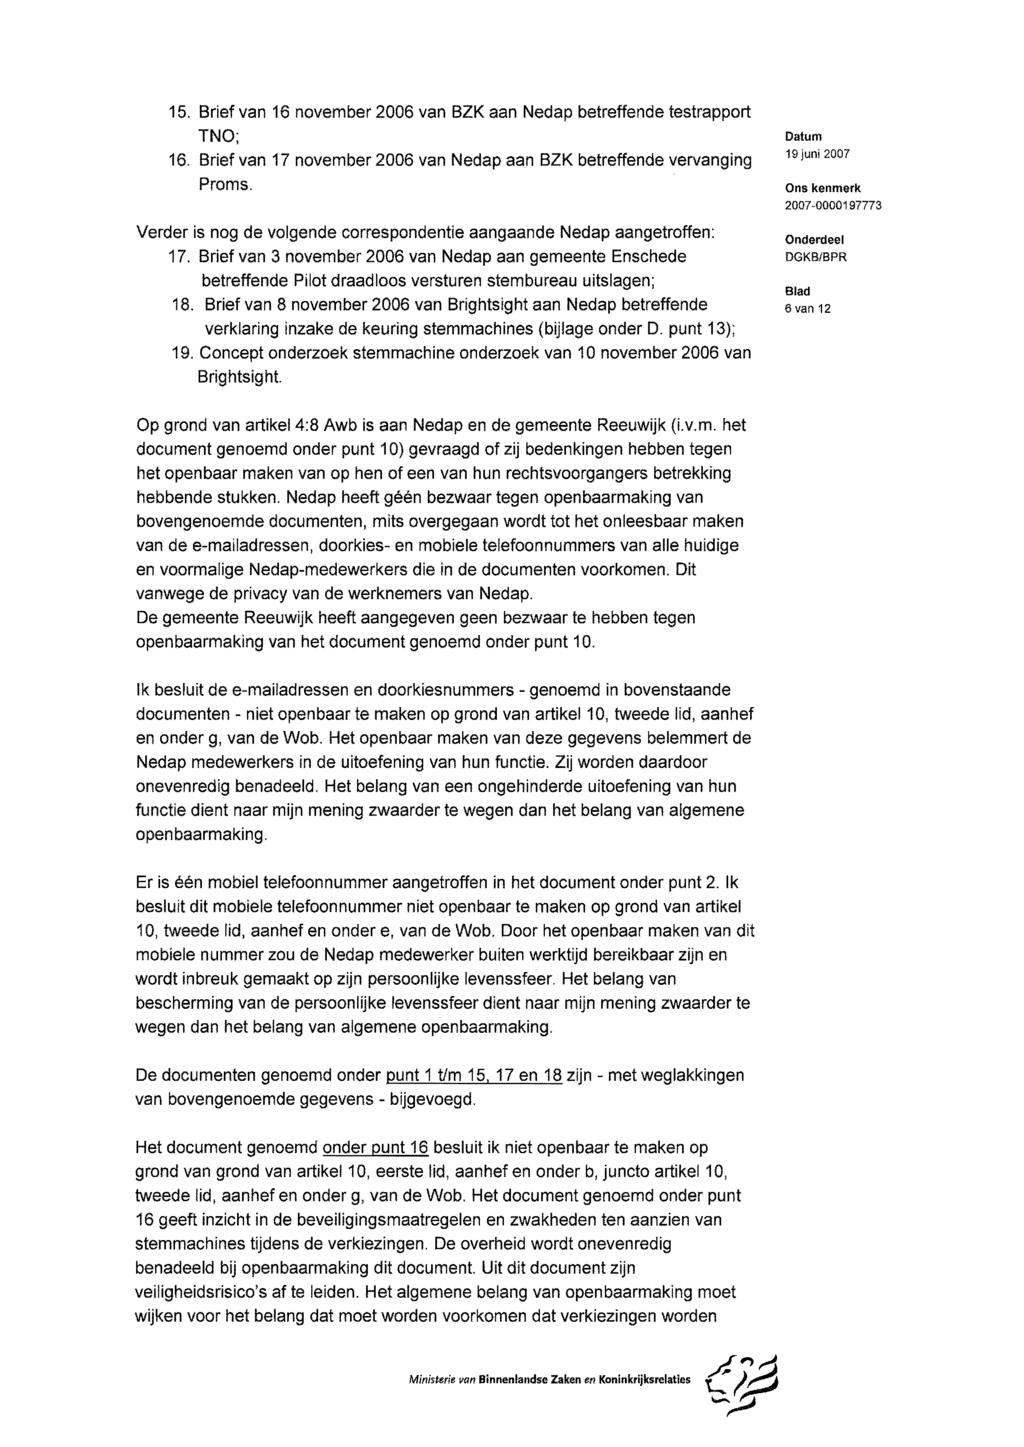 15. Brief van 16 november 2006 van BZK aan Nedap betreffende testrapport TNO; 16. Brief van 17 november 2006 van Nedap aan BZK betreffende vervanging Proms.